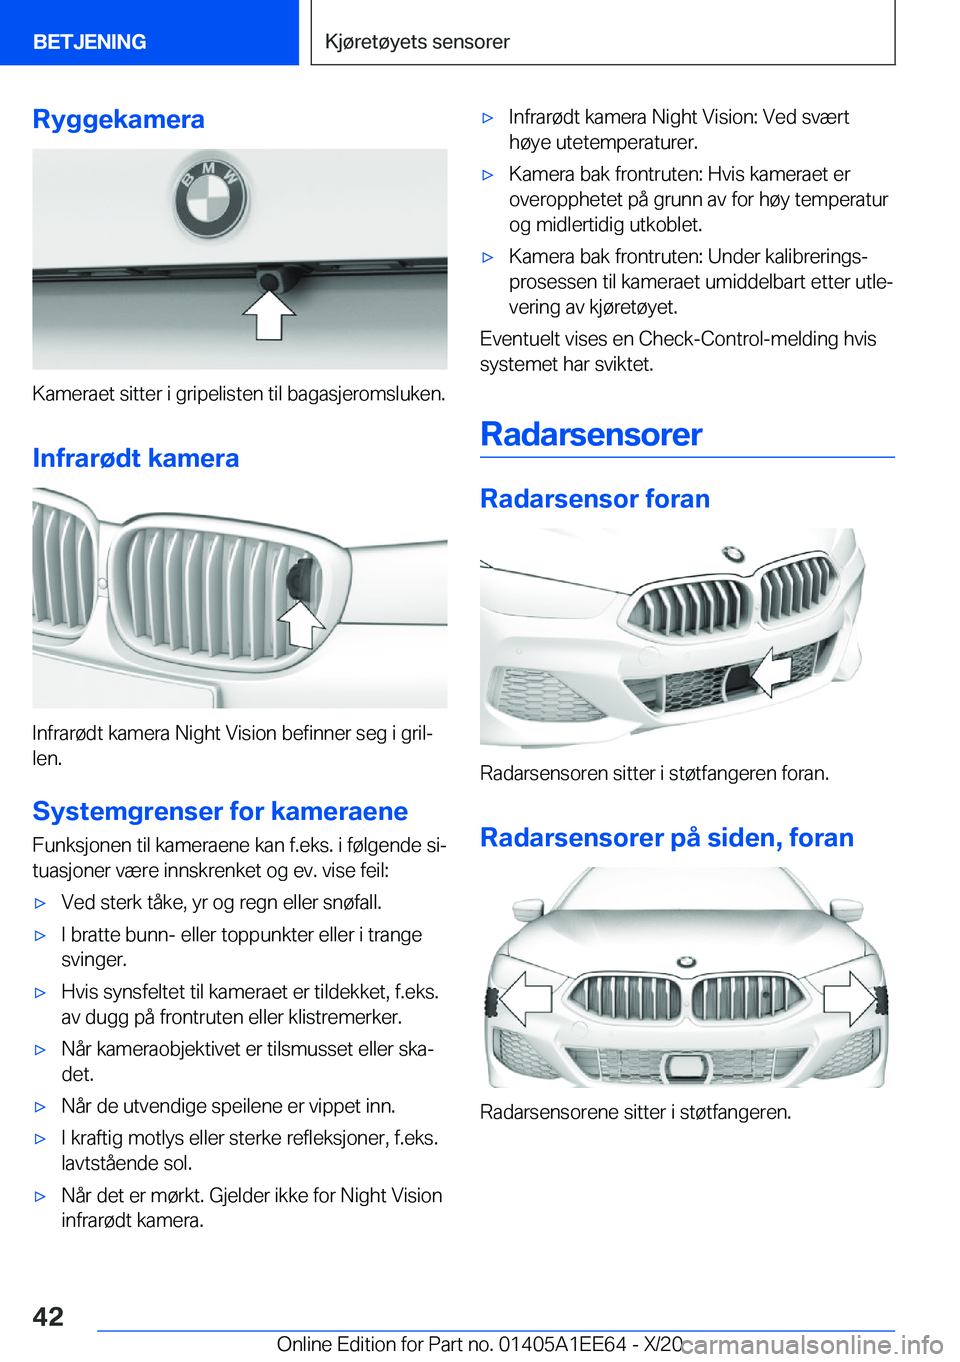 BMW 8 SERIES CONVERTIBLE 2021  InstruksjonsbØker (in Norwegian) �R�y�g�g�e�k�a�m�e�r�a
�K�a�m�e�r�a�e�t��s�i�t�t�e�r��i��g�r�i�p�e�l�i�s�t�e�n��t�i�l��b�a�g�a�s�j�e�r�o�m�s�l�u�k�e�n�.
�I�n�f�r�a�r�